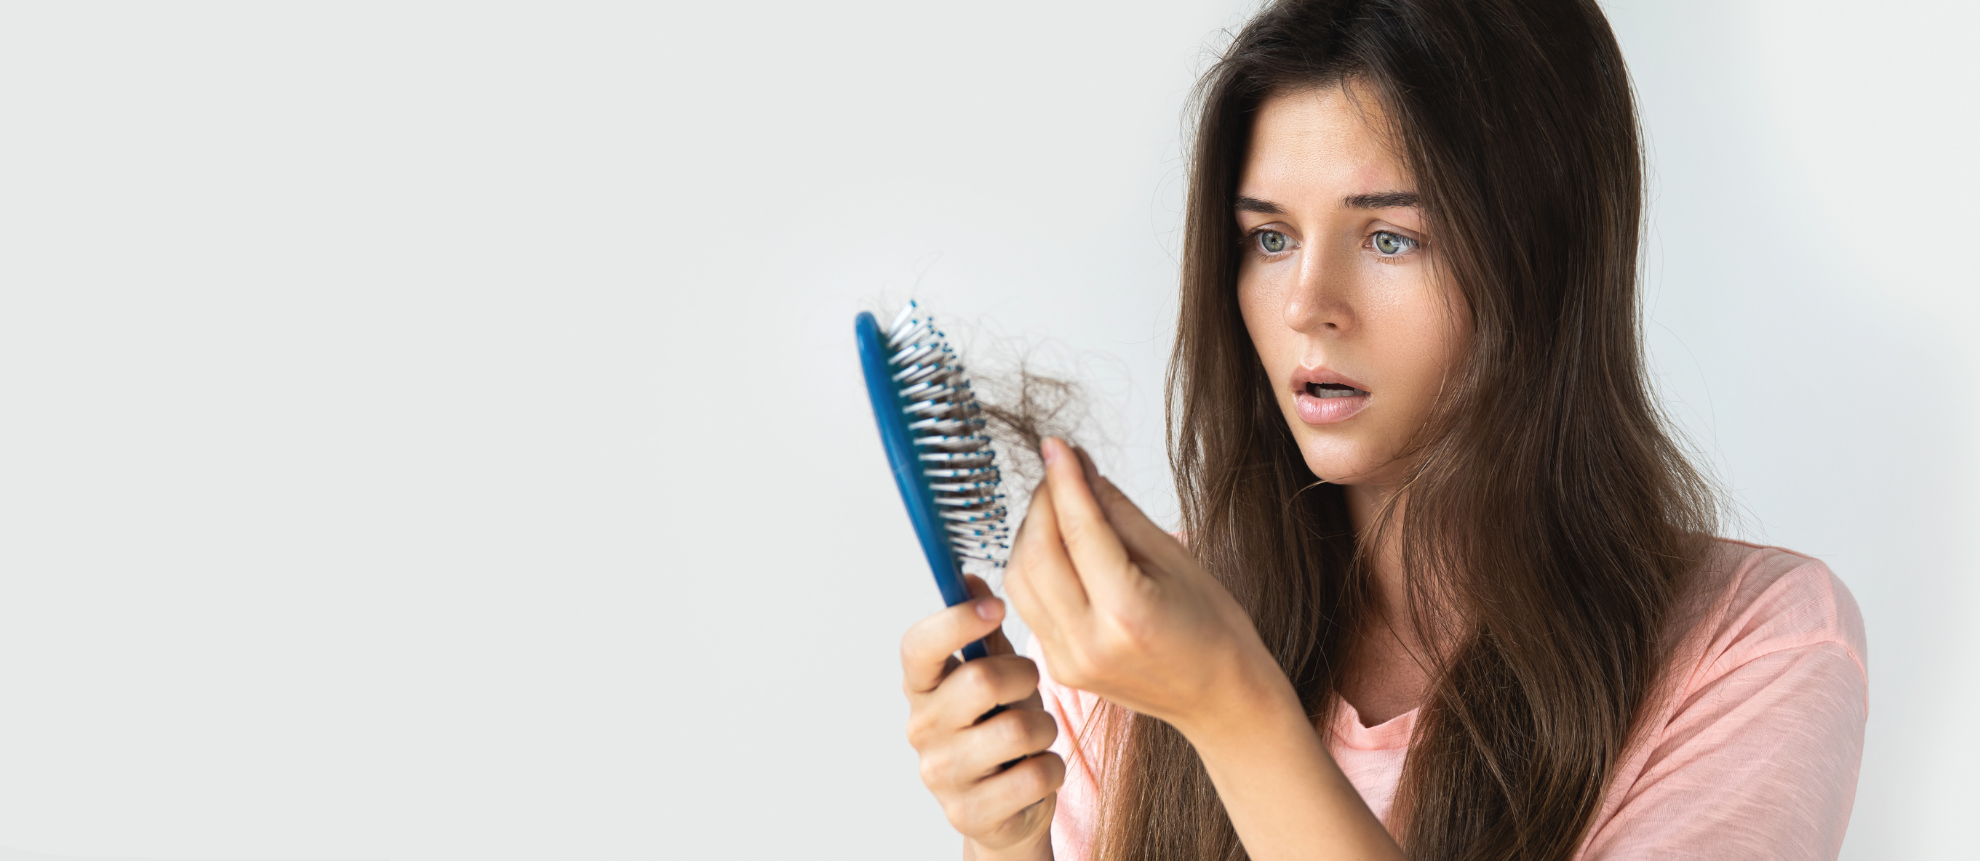 Tipps und Tricks für effektive Haarpflege und Prävention von Haarausfall